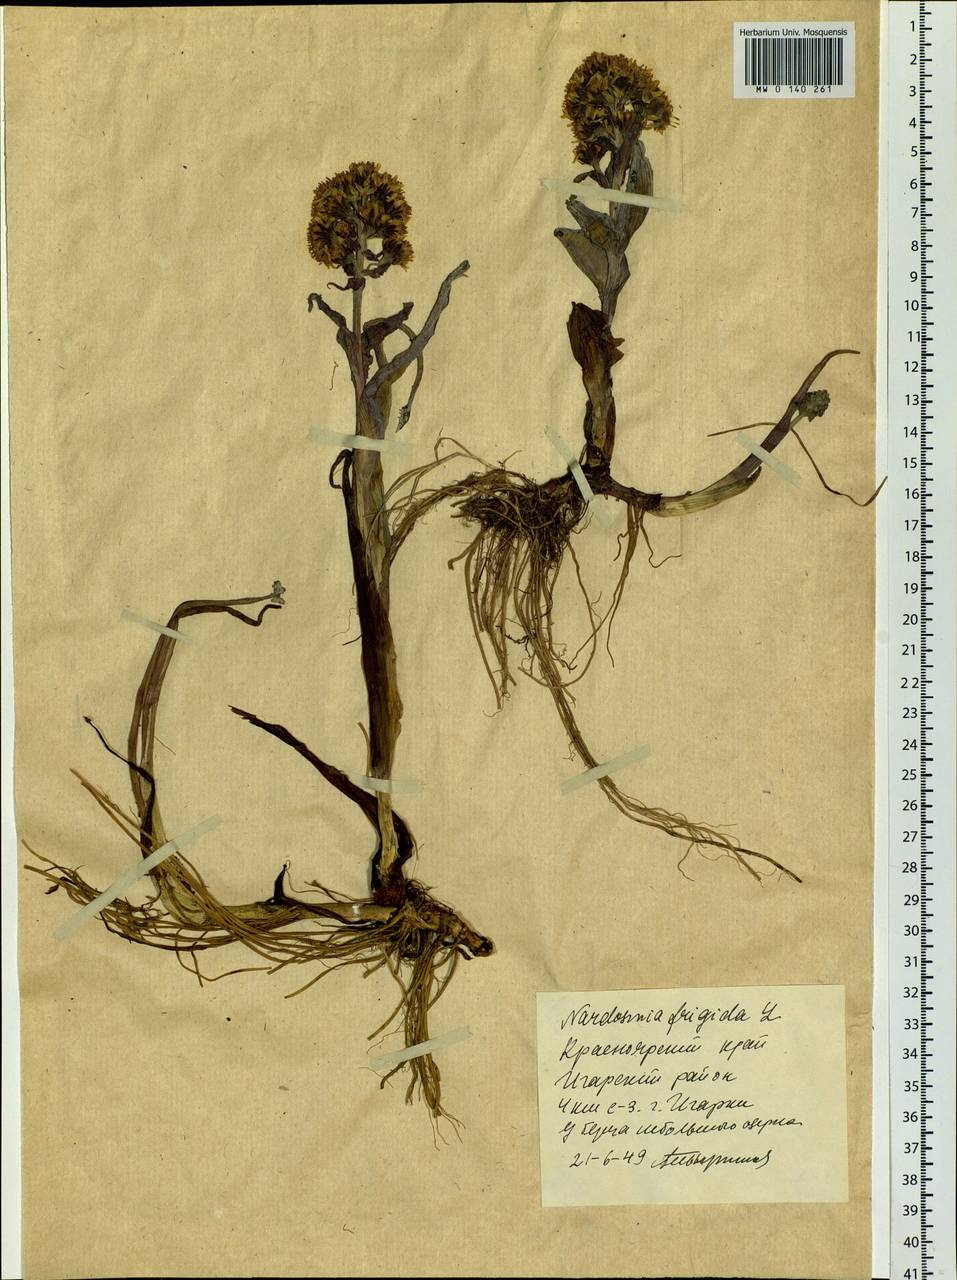 Petasites frigidus (L.) Fr., Siberia, Central Siberia (S3) (Russia)